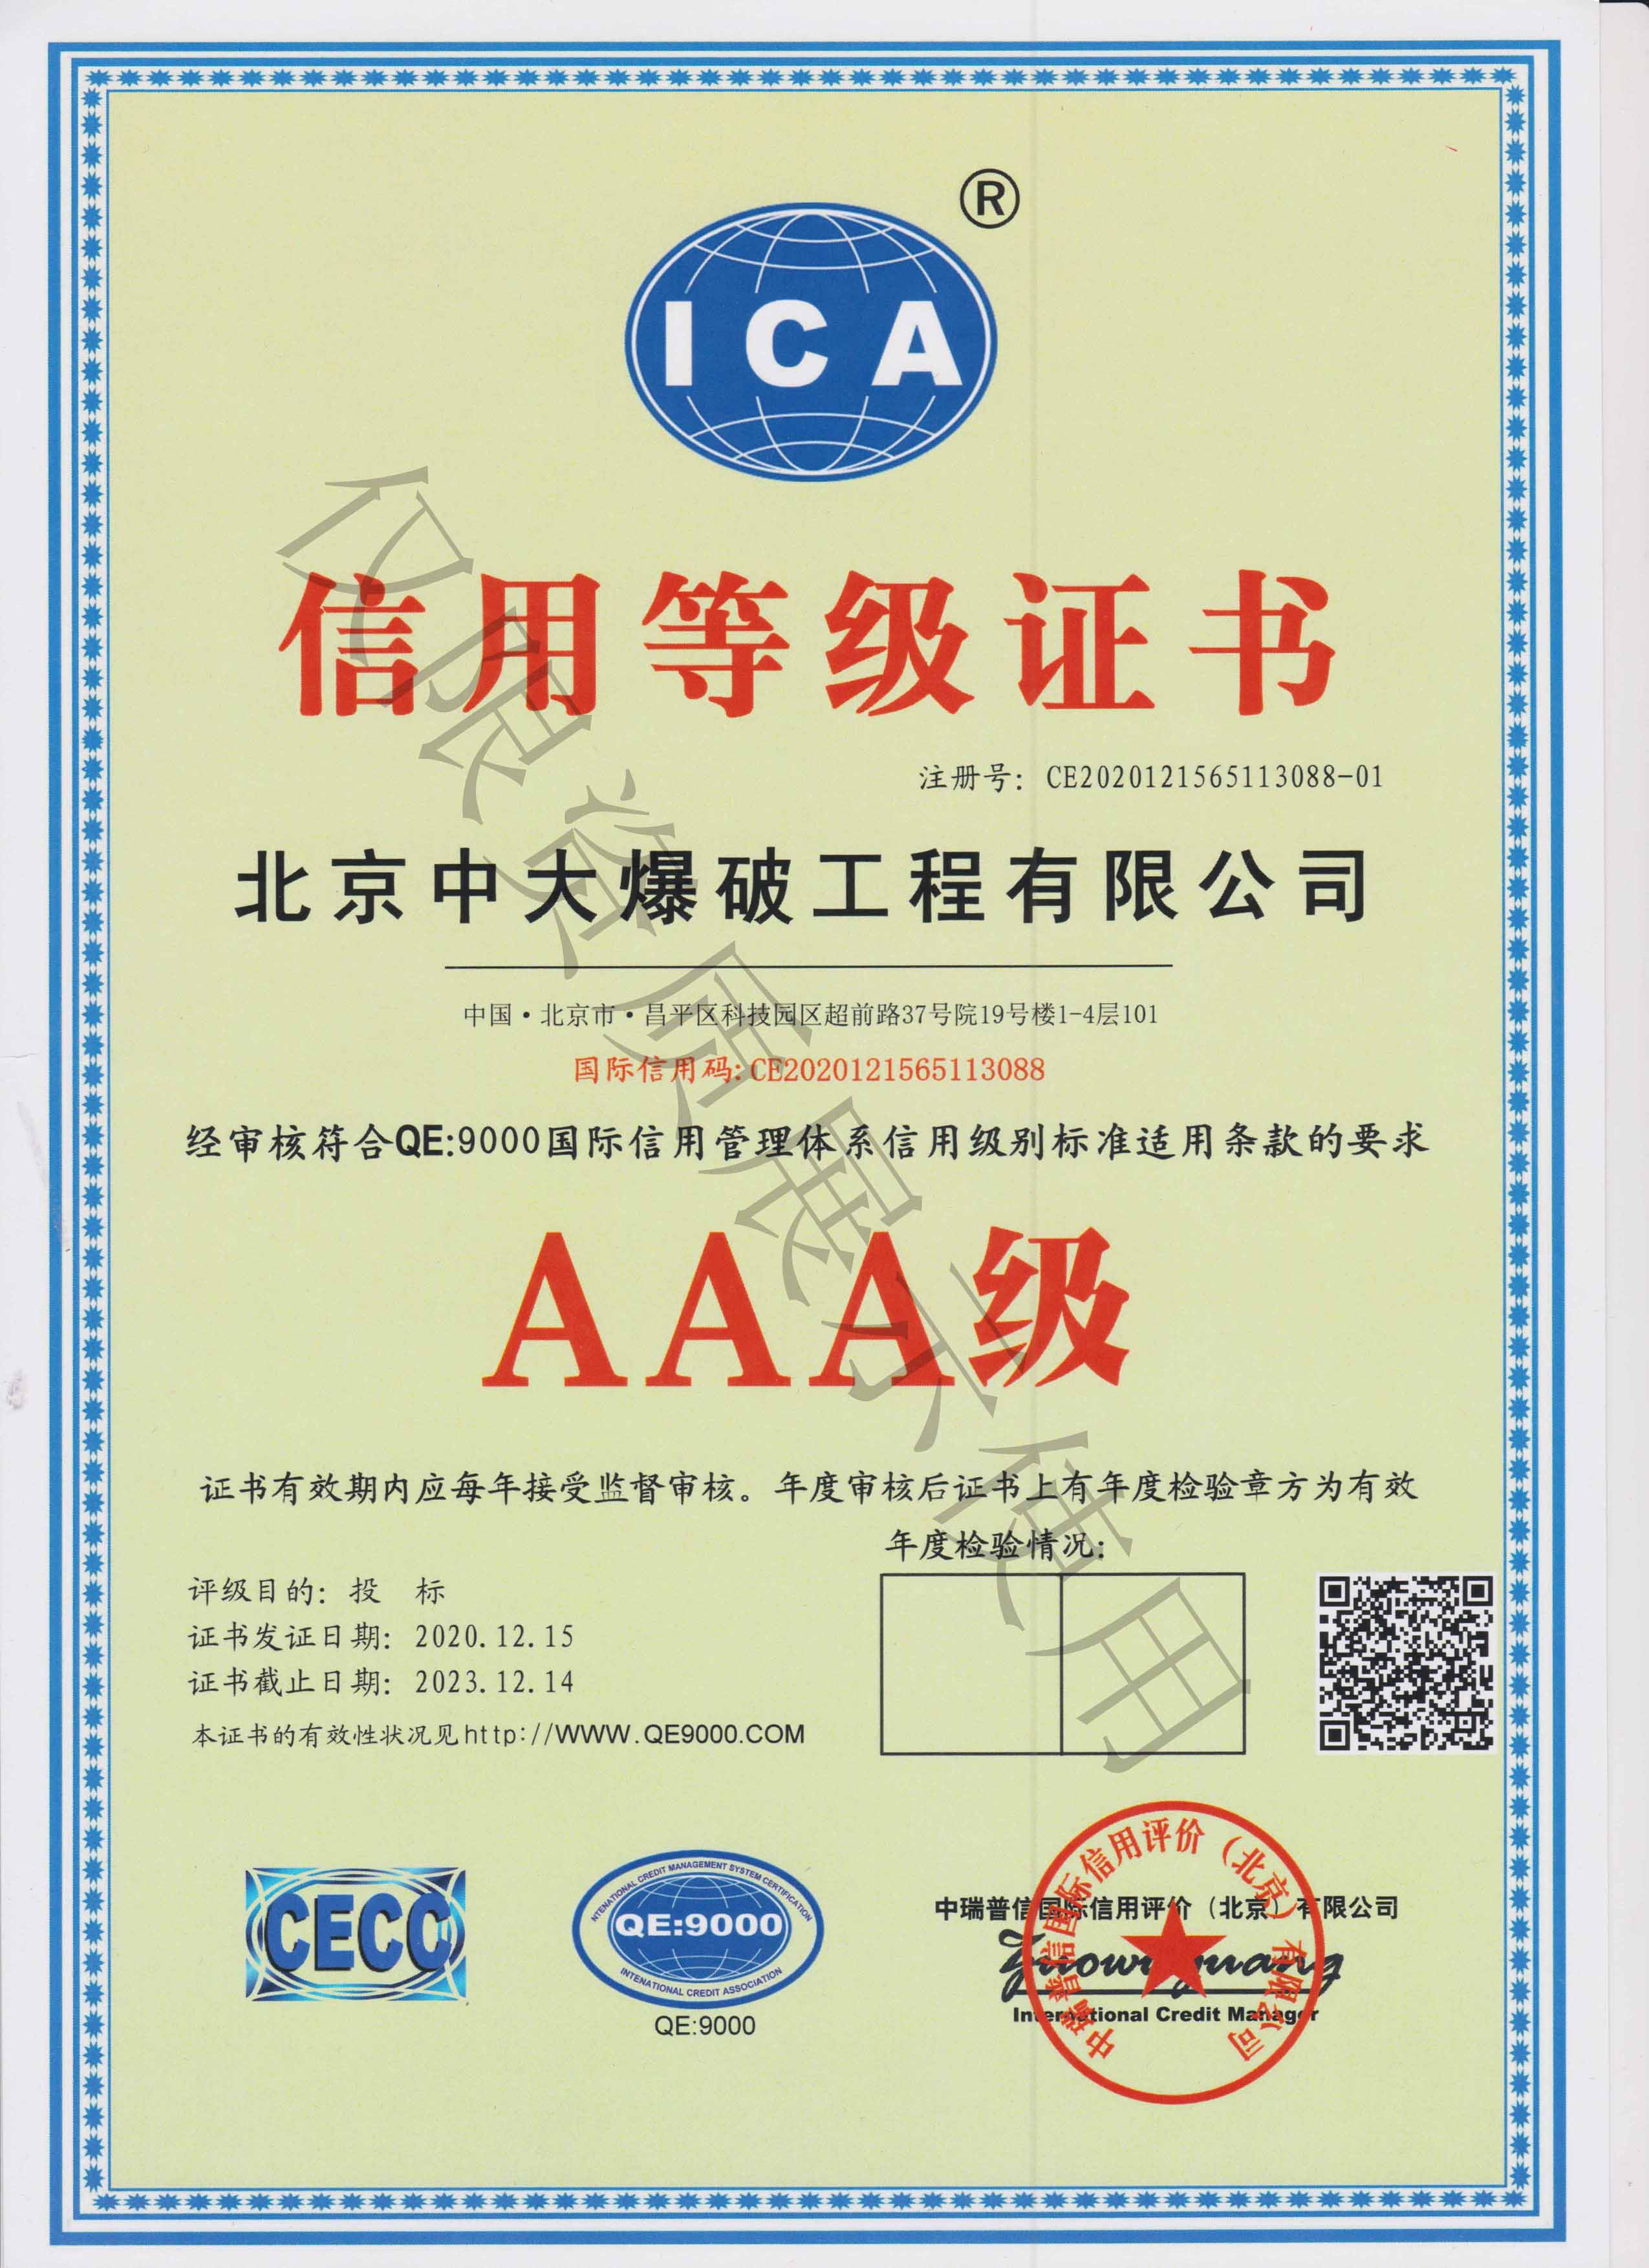 AAA信用等级证书-中文2023.12.14.jpg